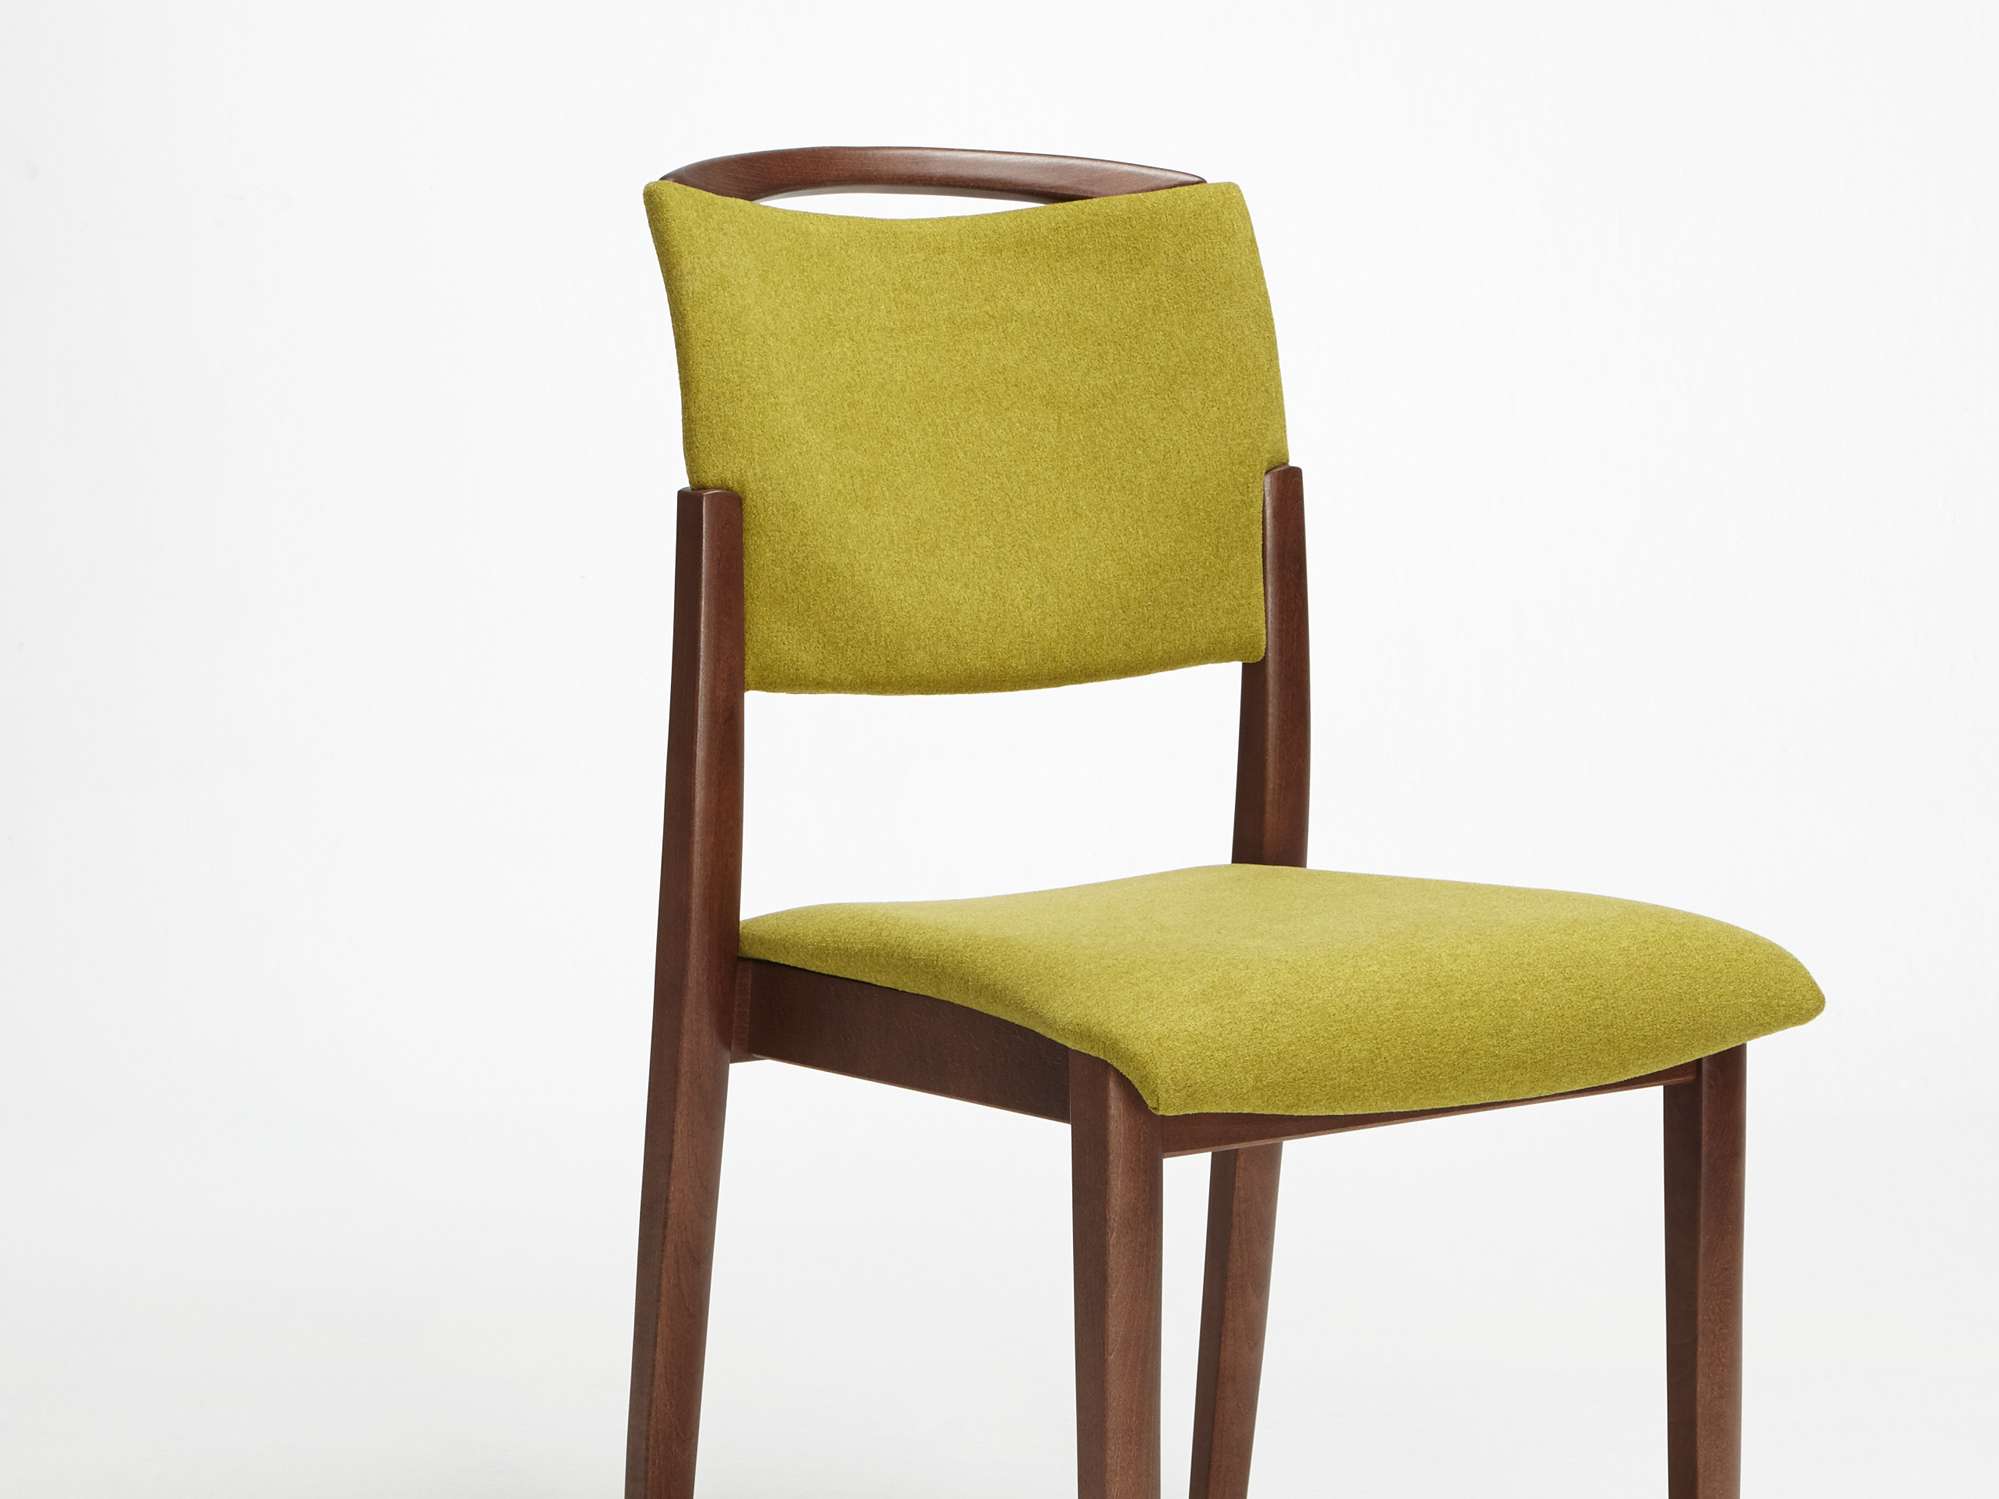 Fena-tuoli päällekkäin pinottavana, nostokahvallisena mallina ilman käsinojia